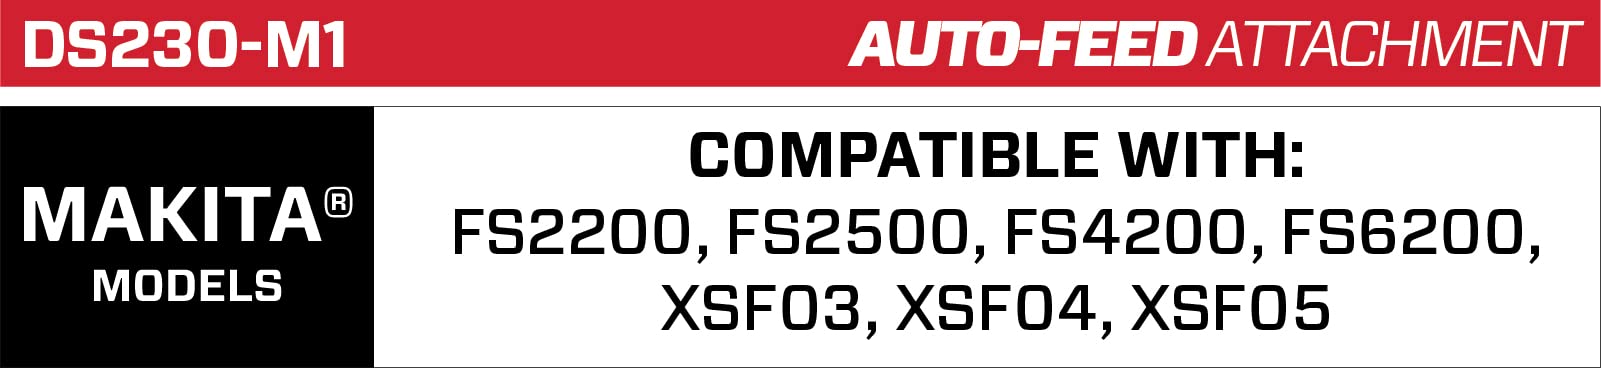 Senco DURASPIN DS230-M1 2" Auto-Feed Screwdriver Attachment 9Z0021N